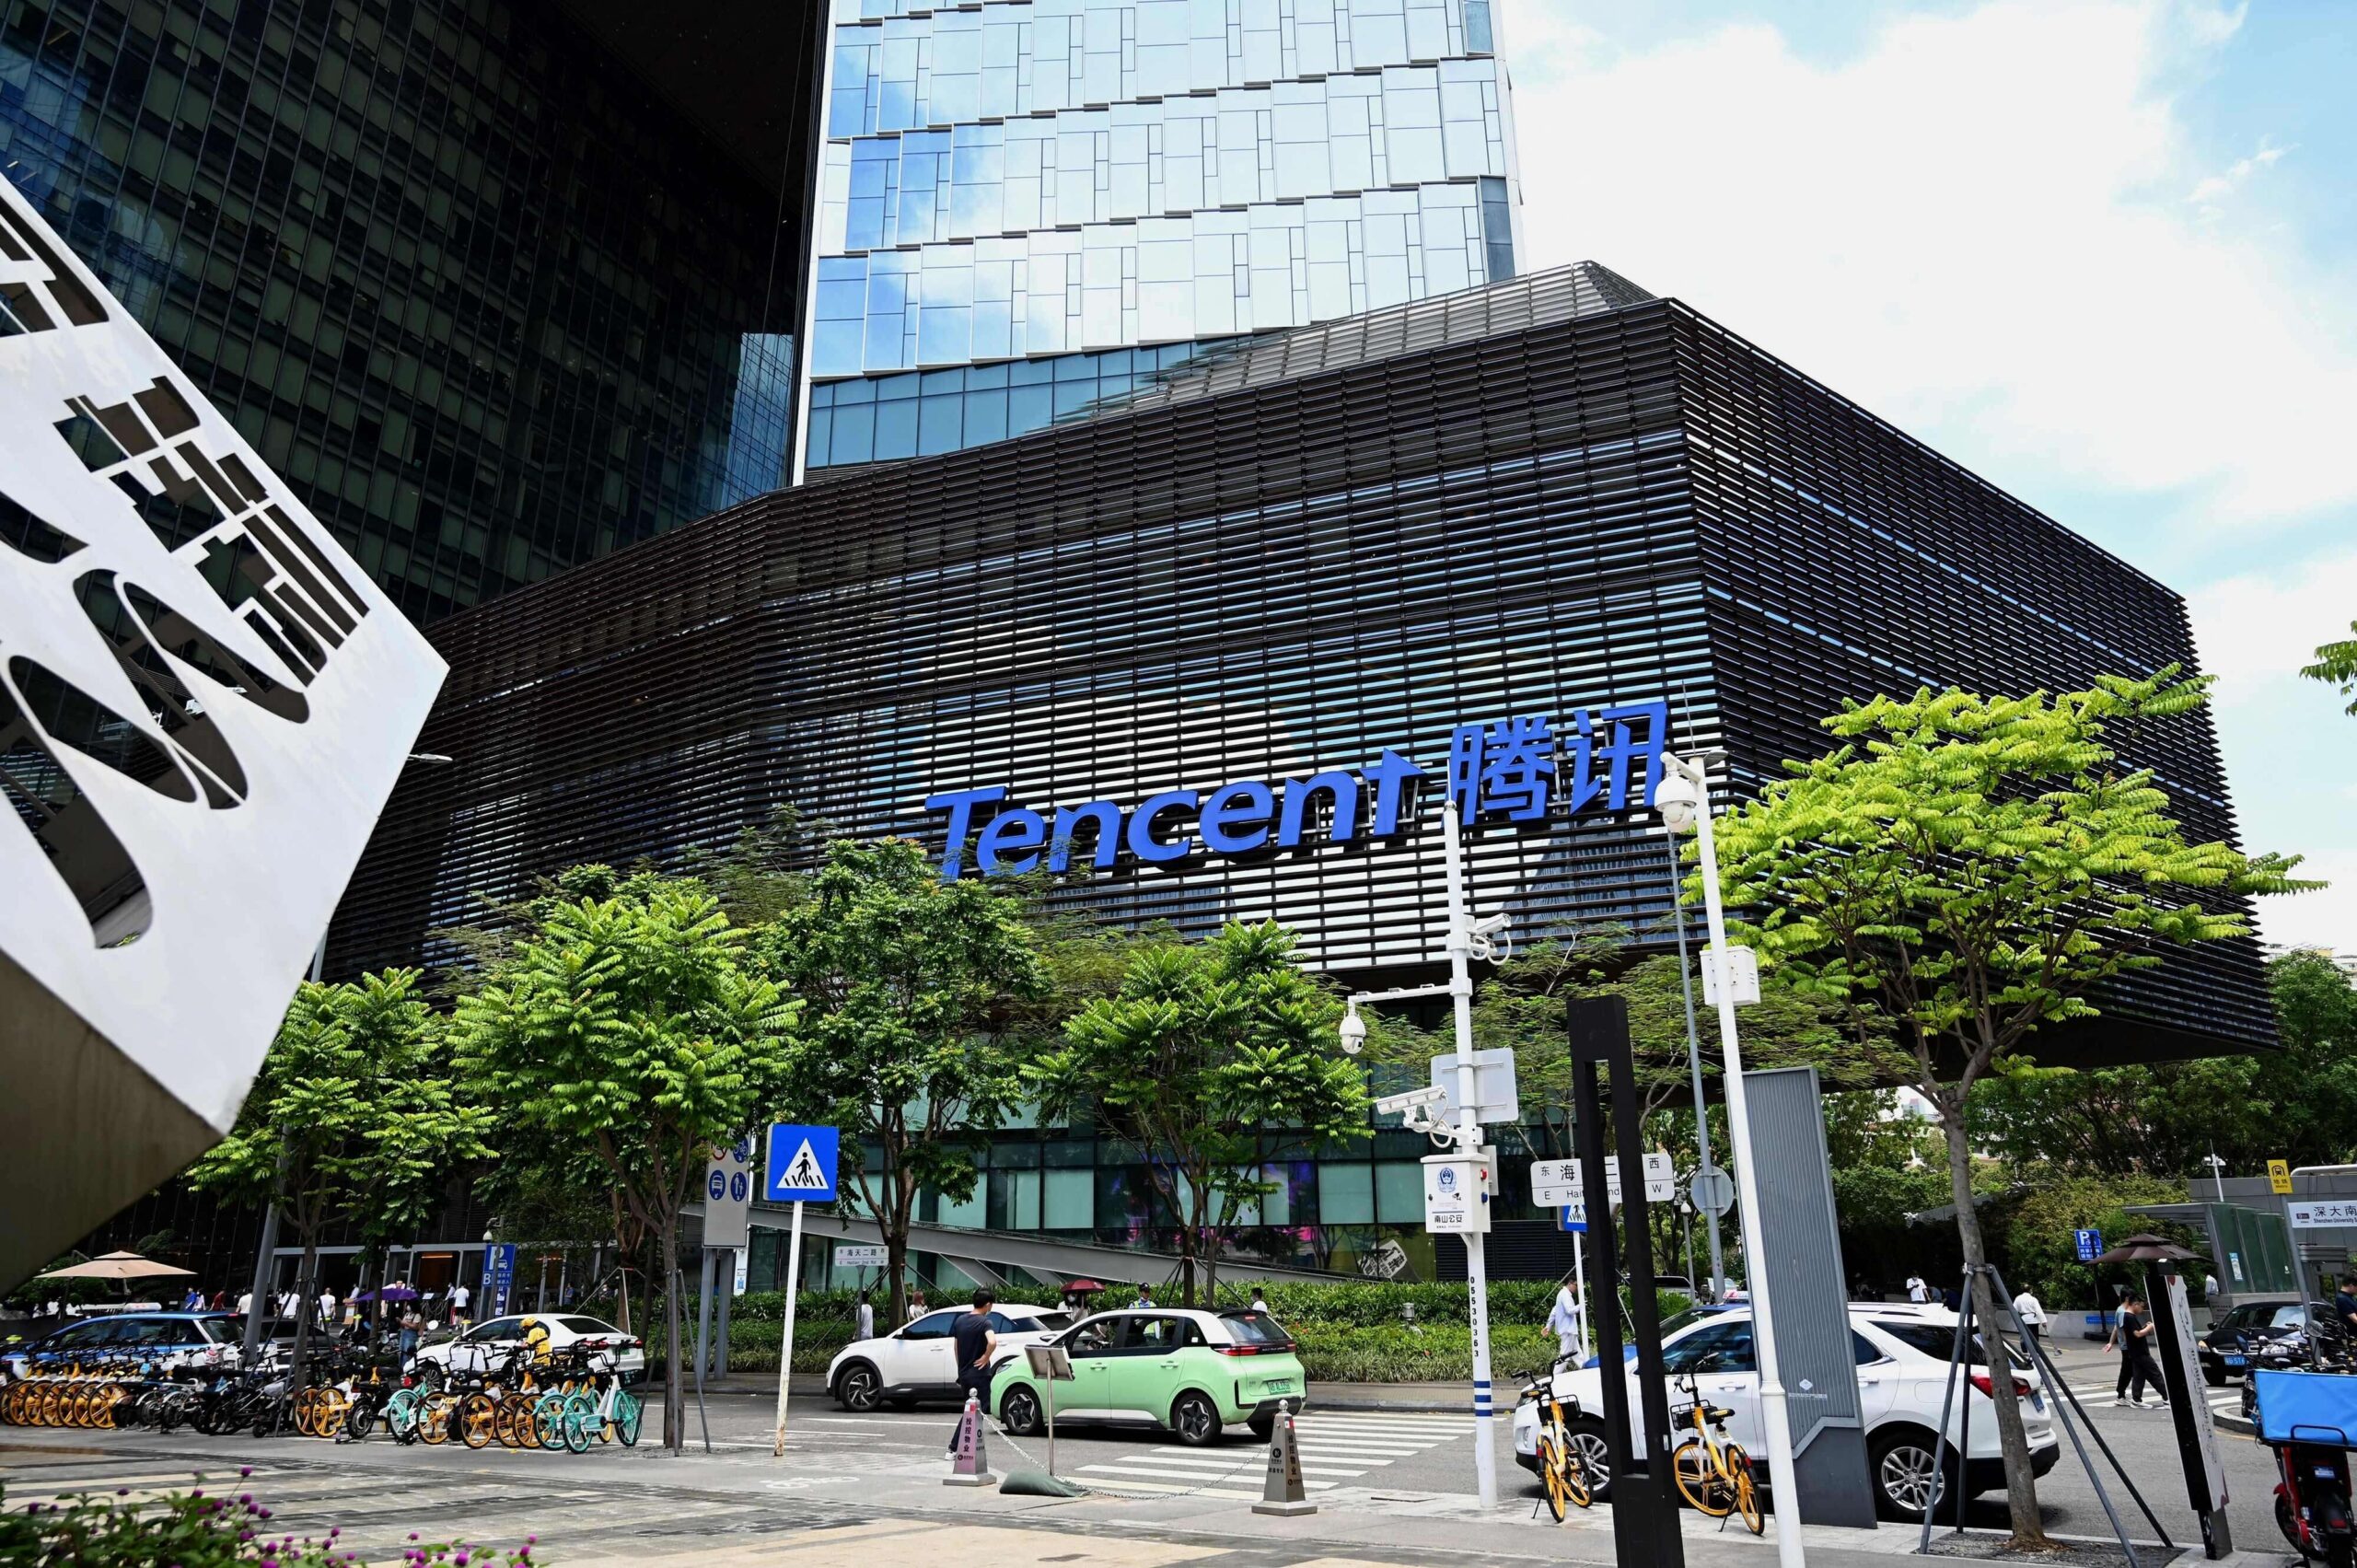 “Tencent Unveils Massive Language AI Model and Opens It for Enterprise Adoption”